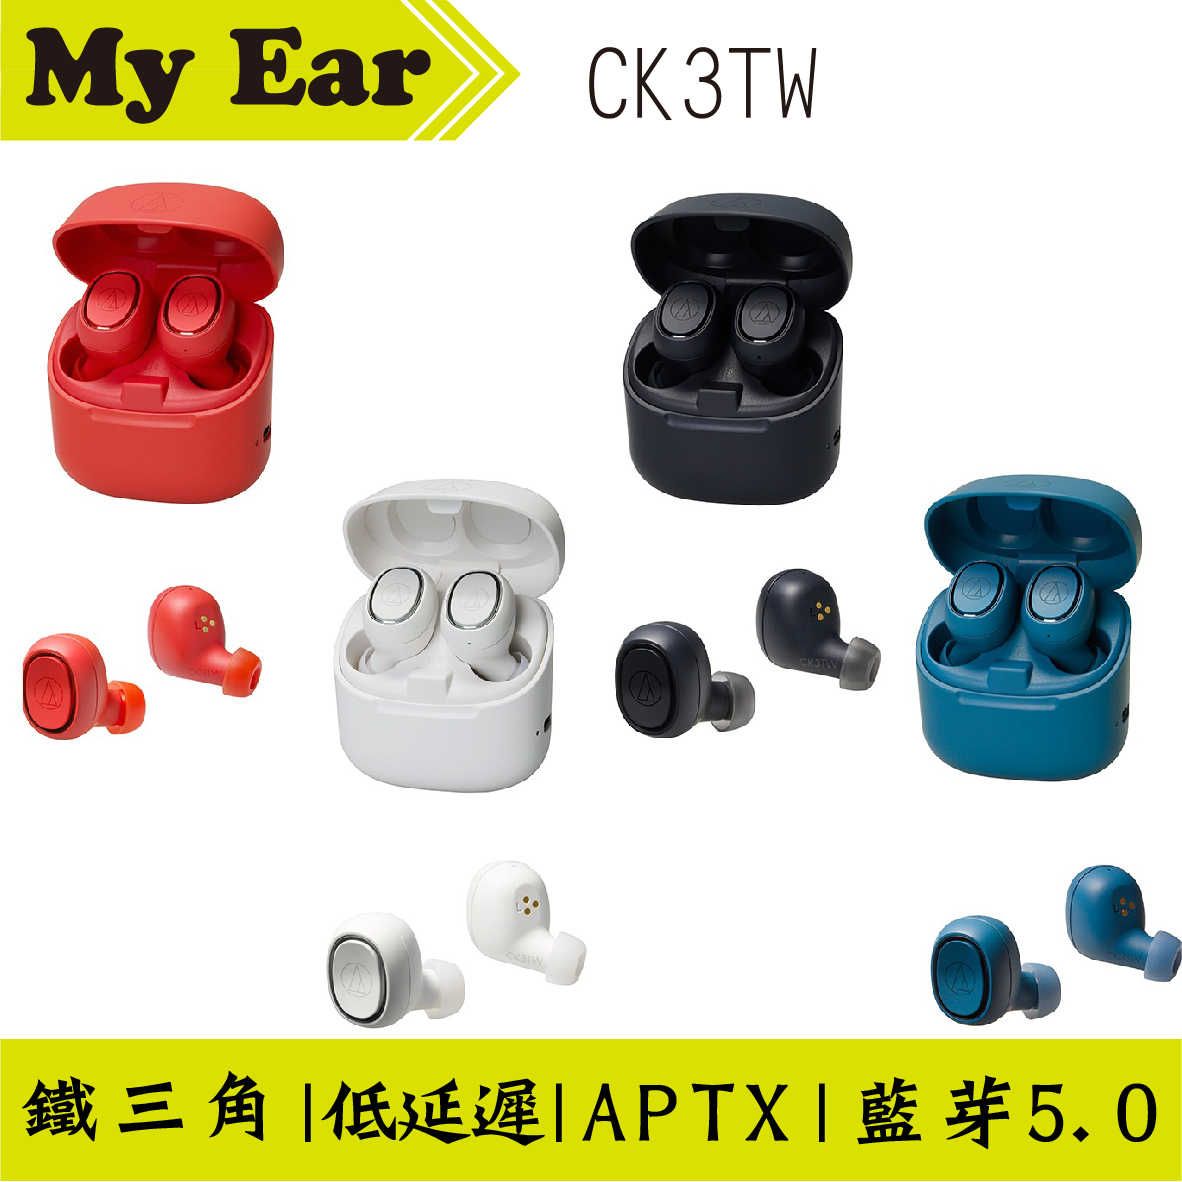 鐵三角 ATH-CK3TW 紅色 真無線 藍芽耳機 APTX 低延遲 | My Ear 耳機專門店